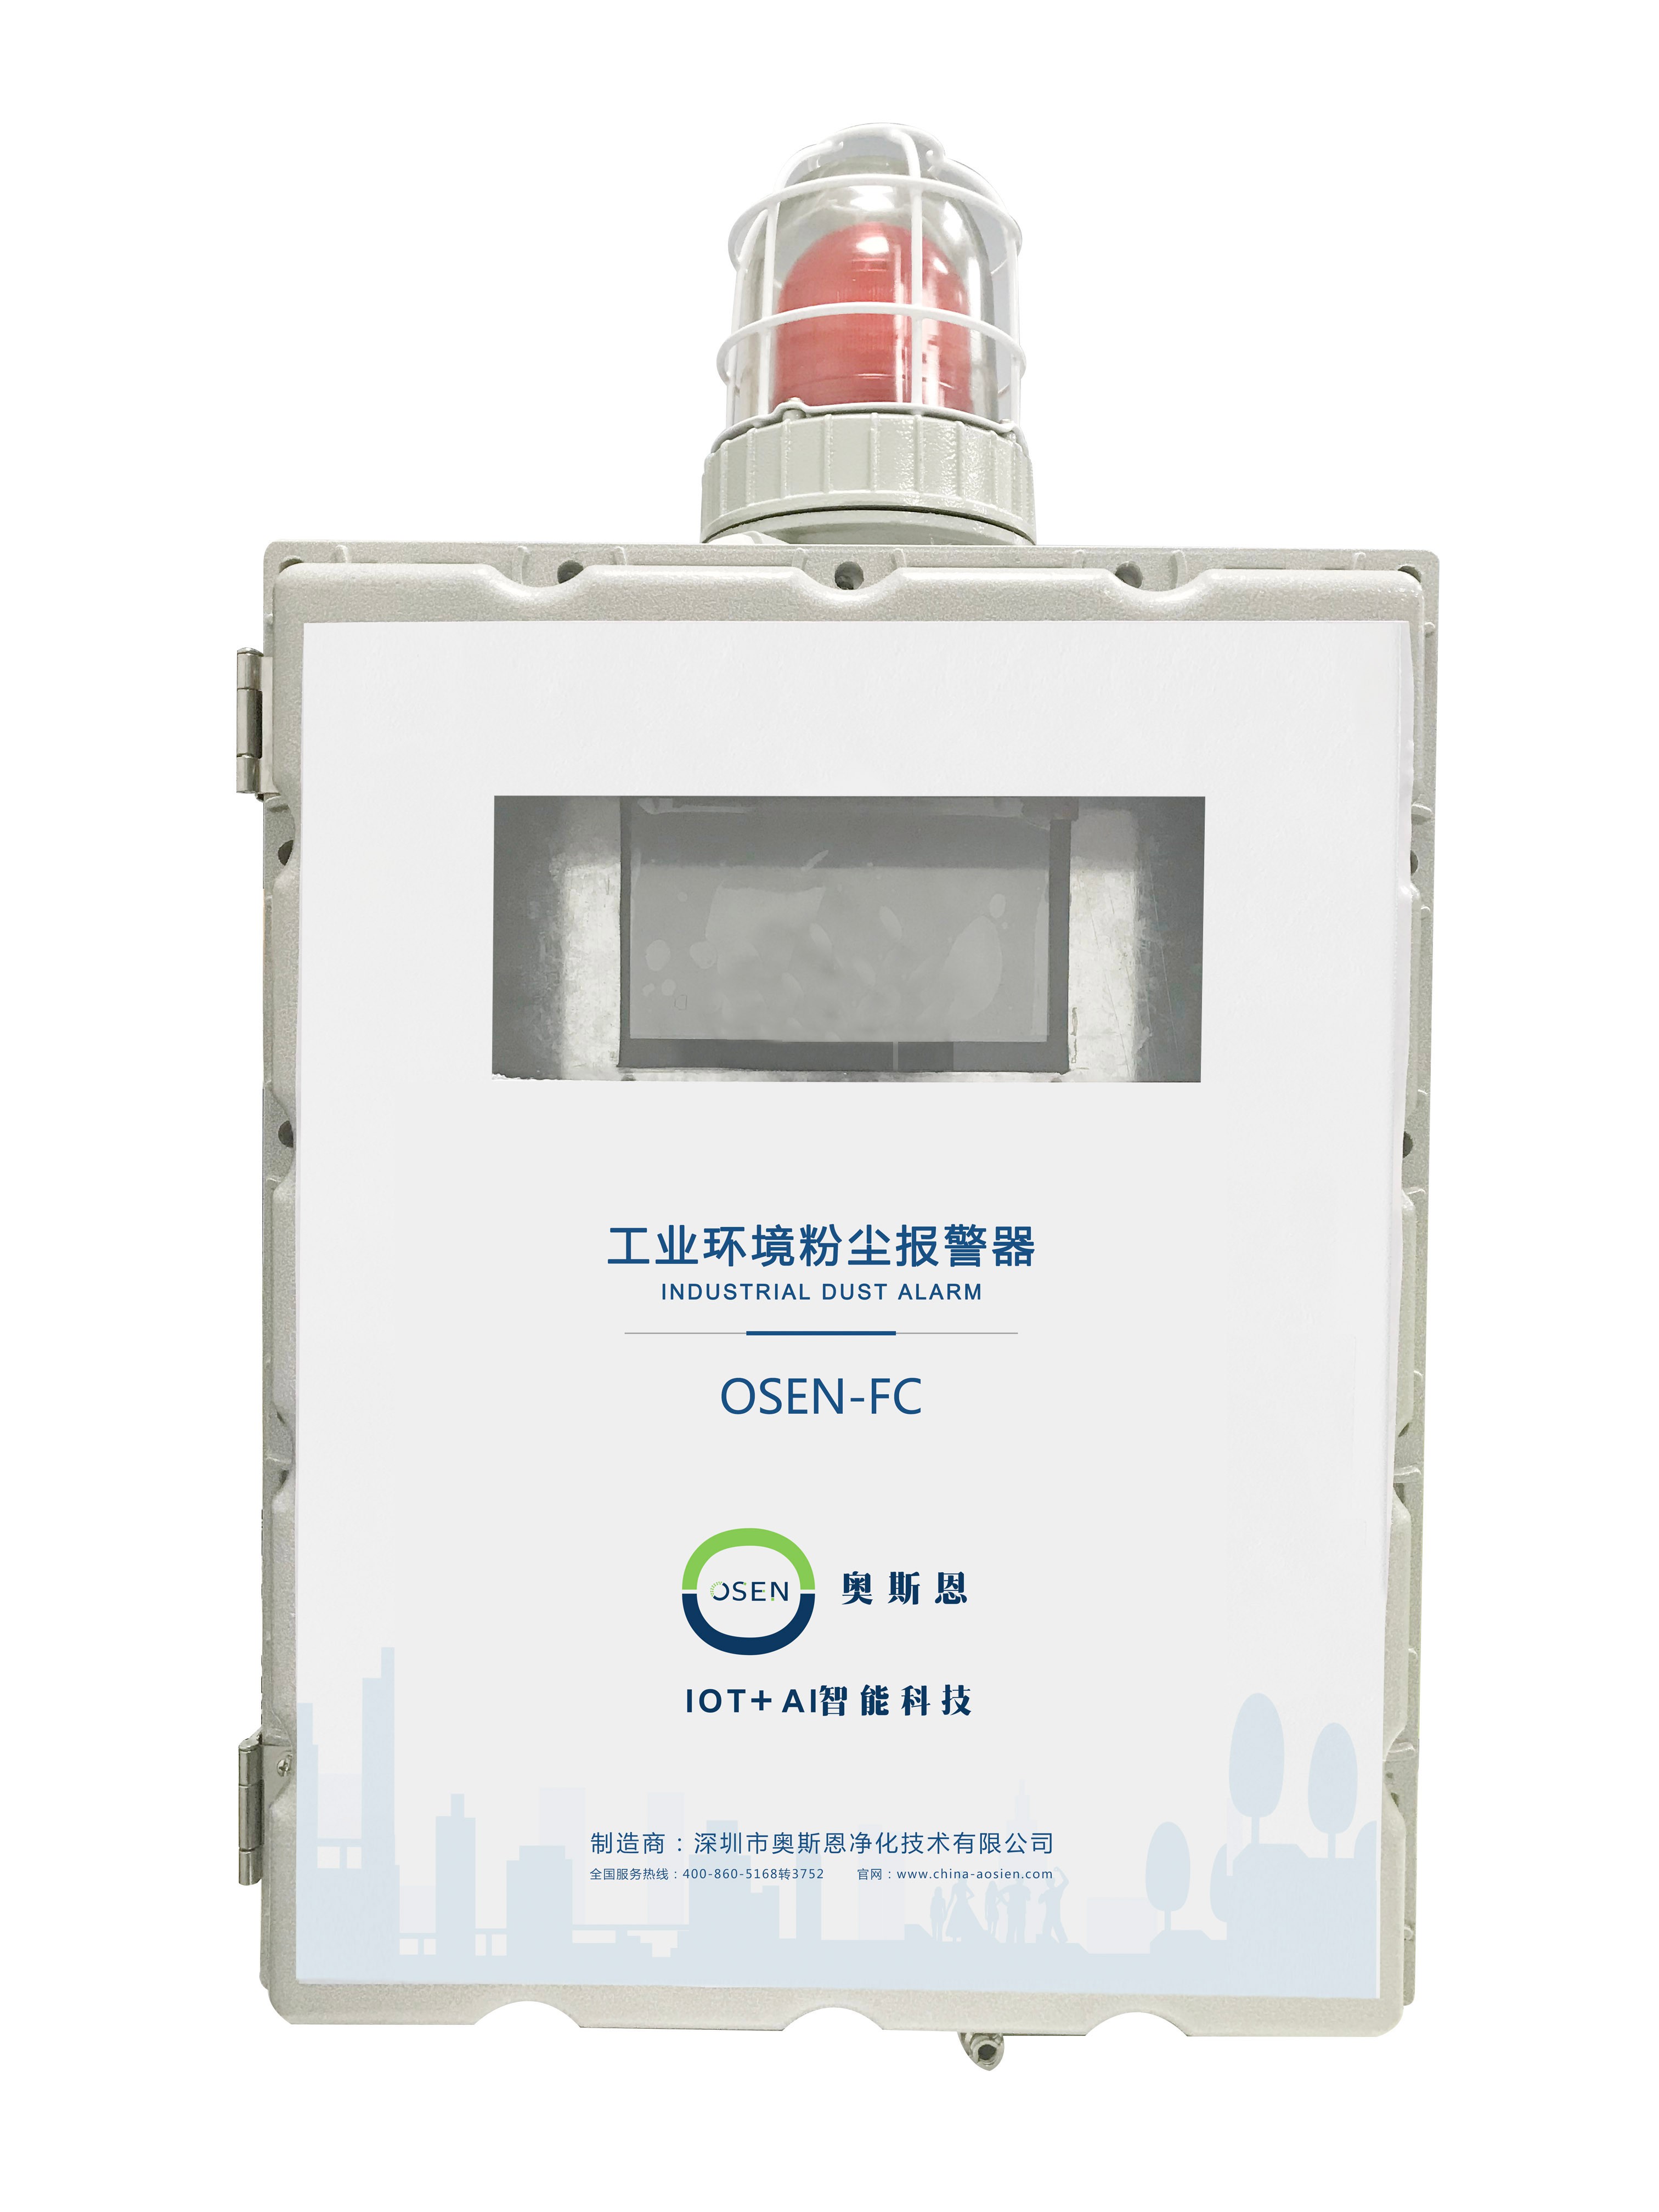 福永码头环境粉尘实时监测系统 浓度超标在线报警系统OSEN-FC厂家